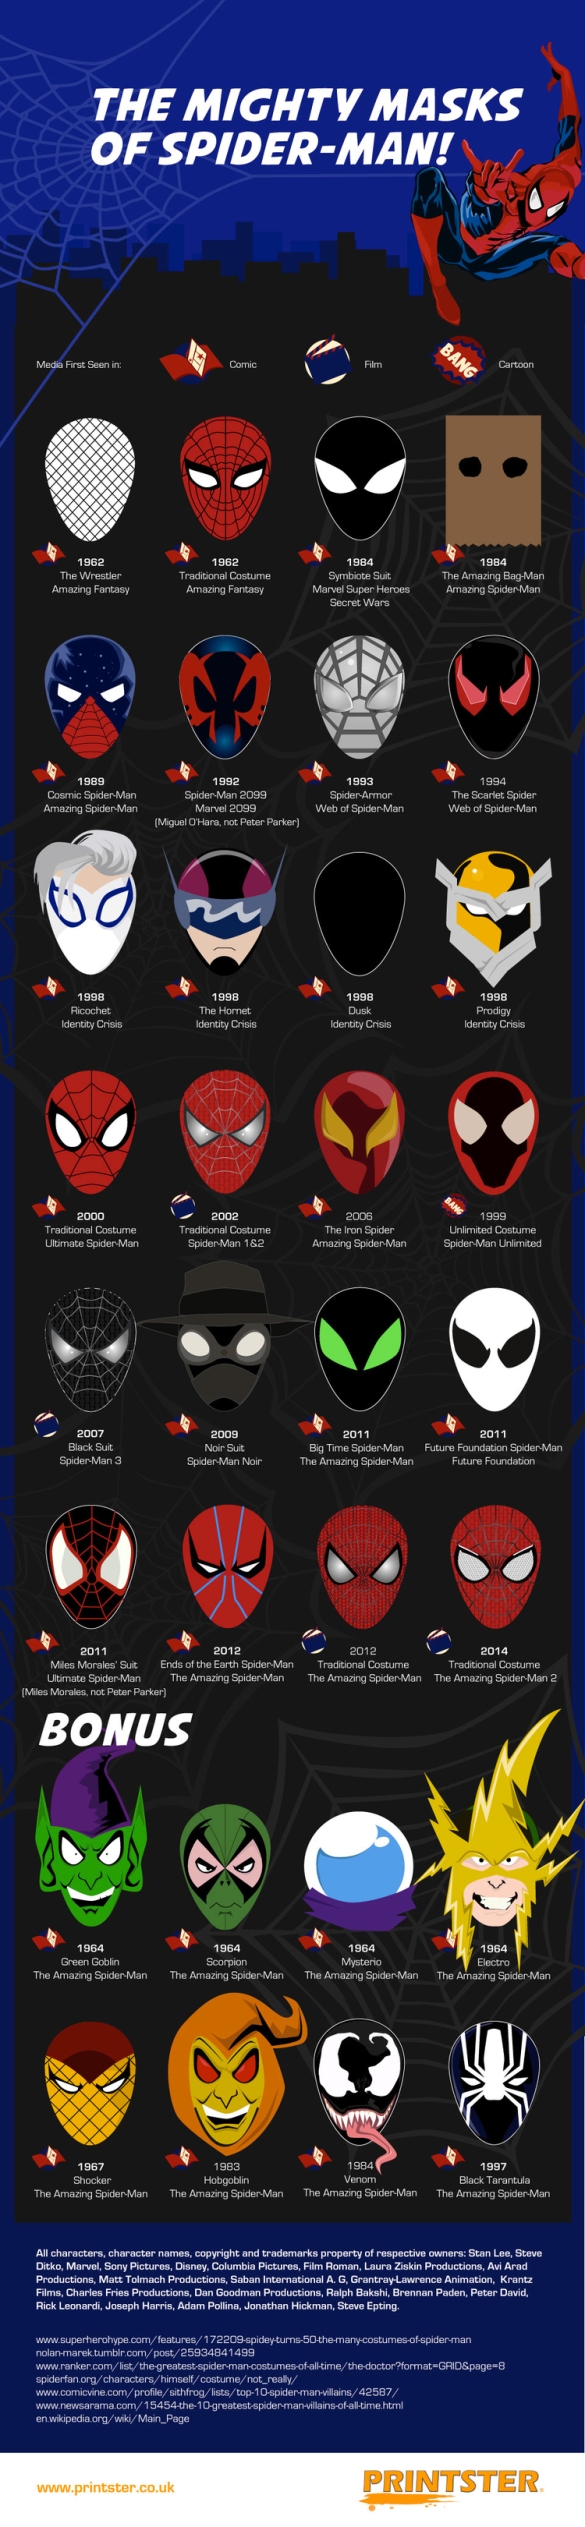 As diversas máscaras do Homem-Aranha